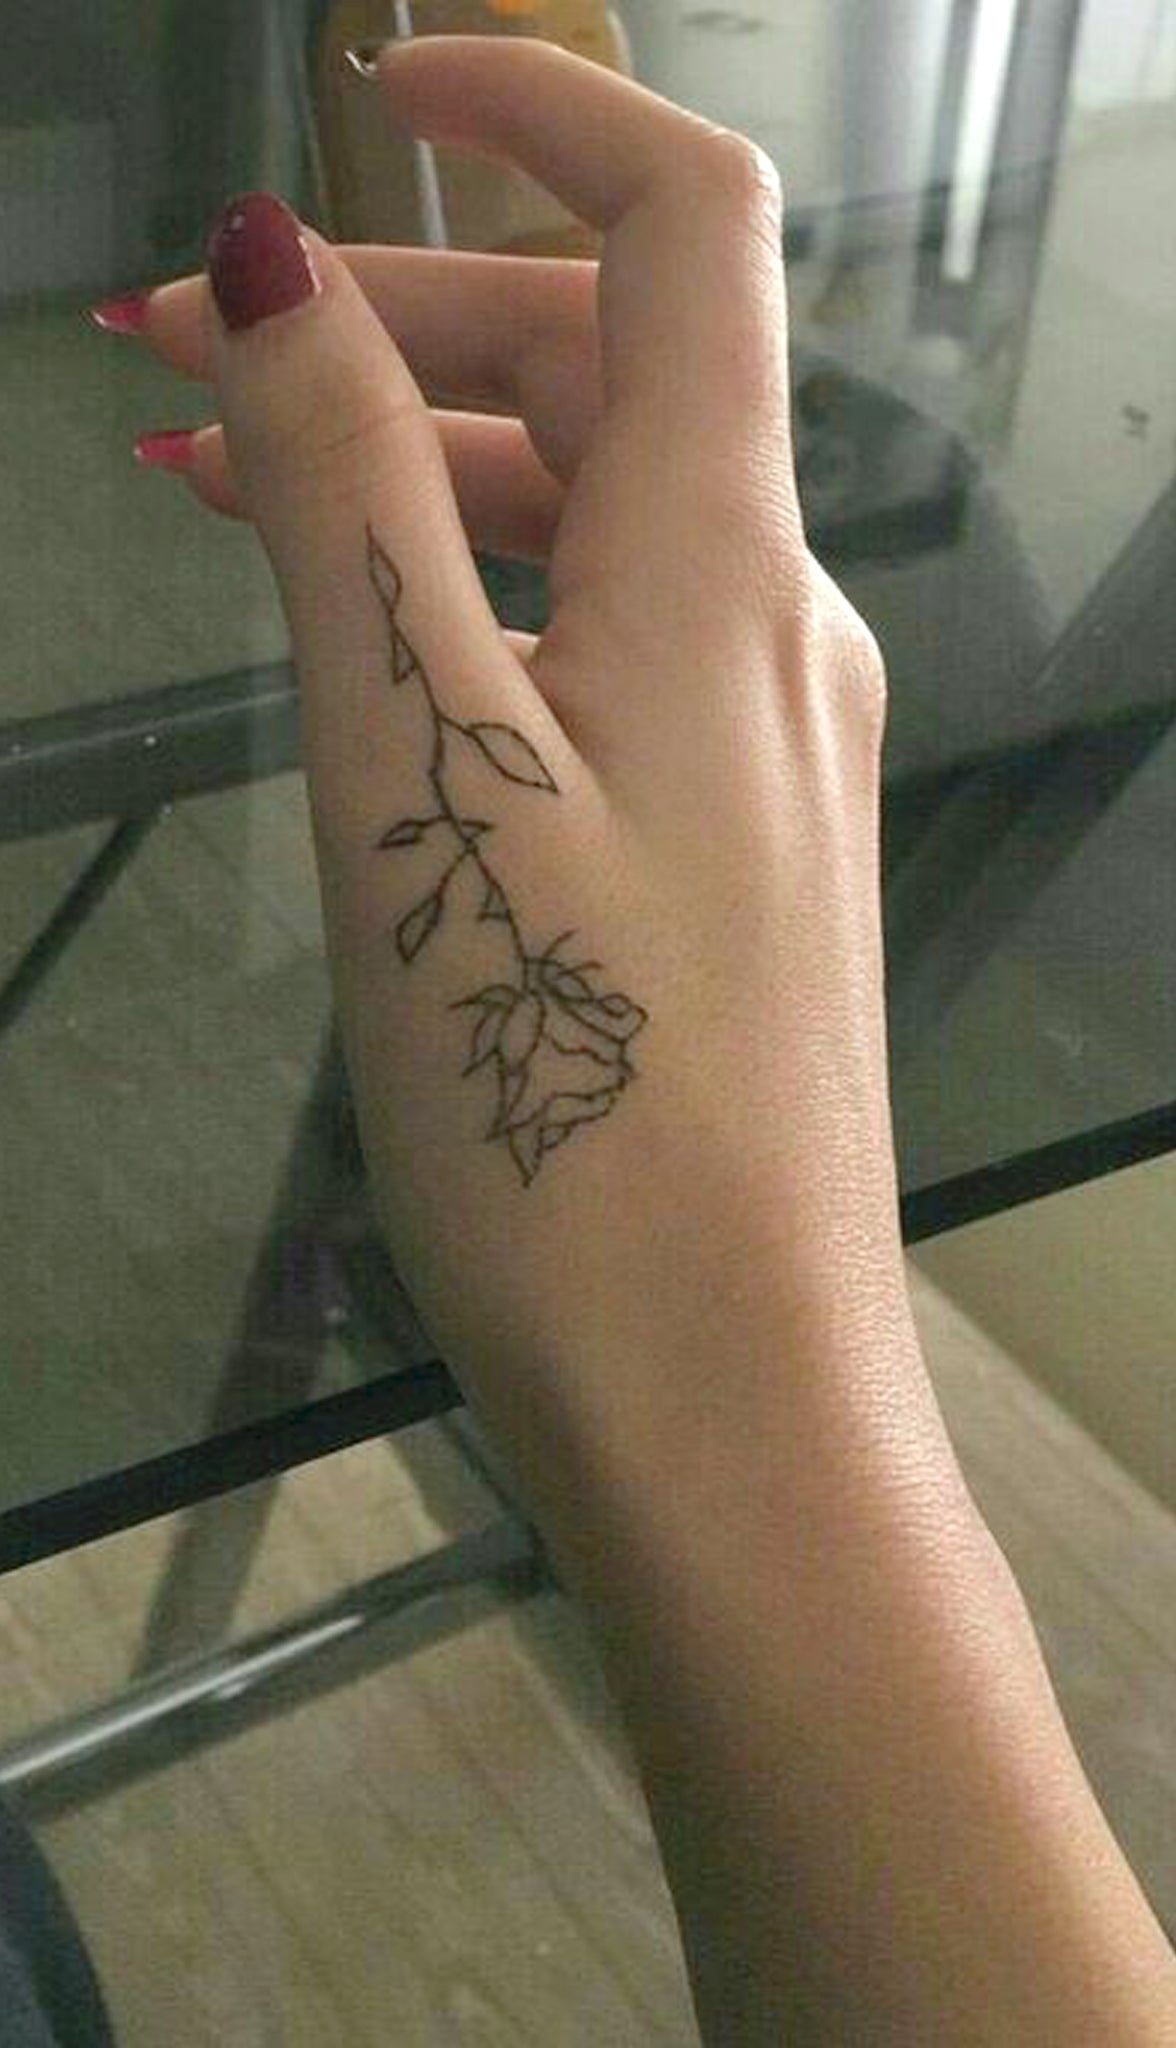 Small Black Rose Finger Tattoo Ideas for Women - Floral Flower Outline Hand Tat - www.MyBodiArt.com